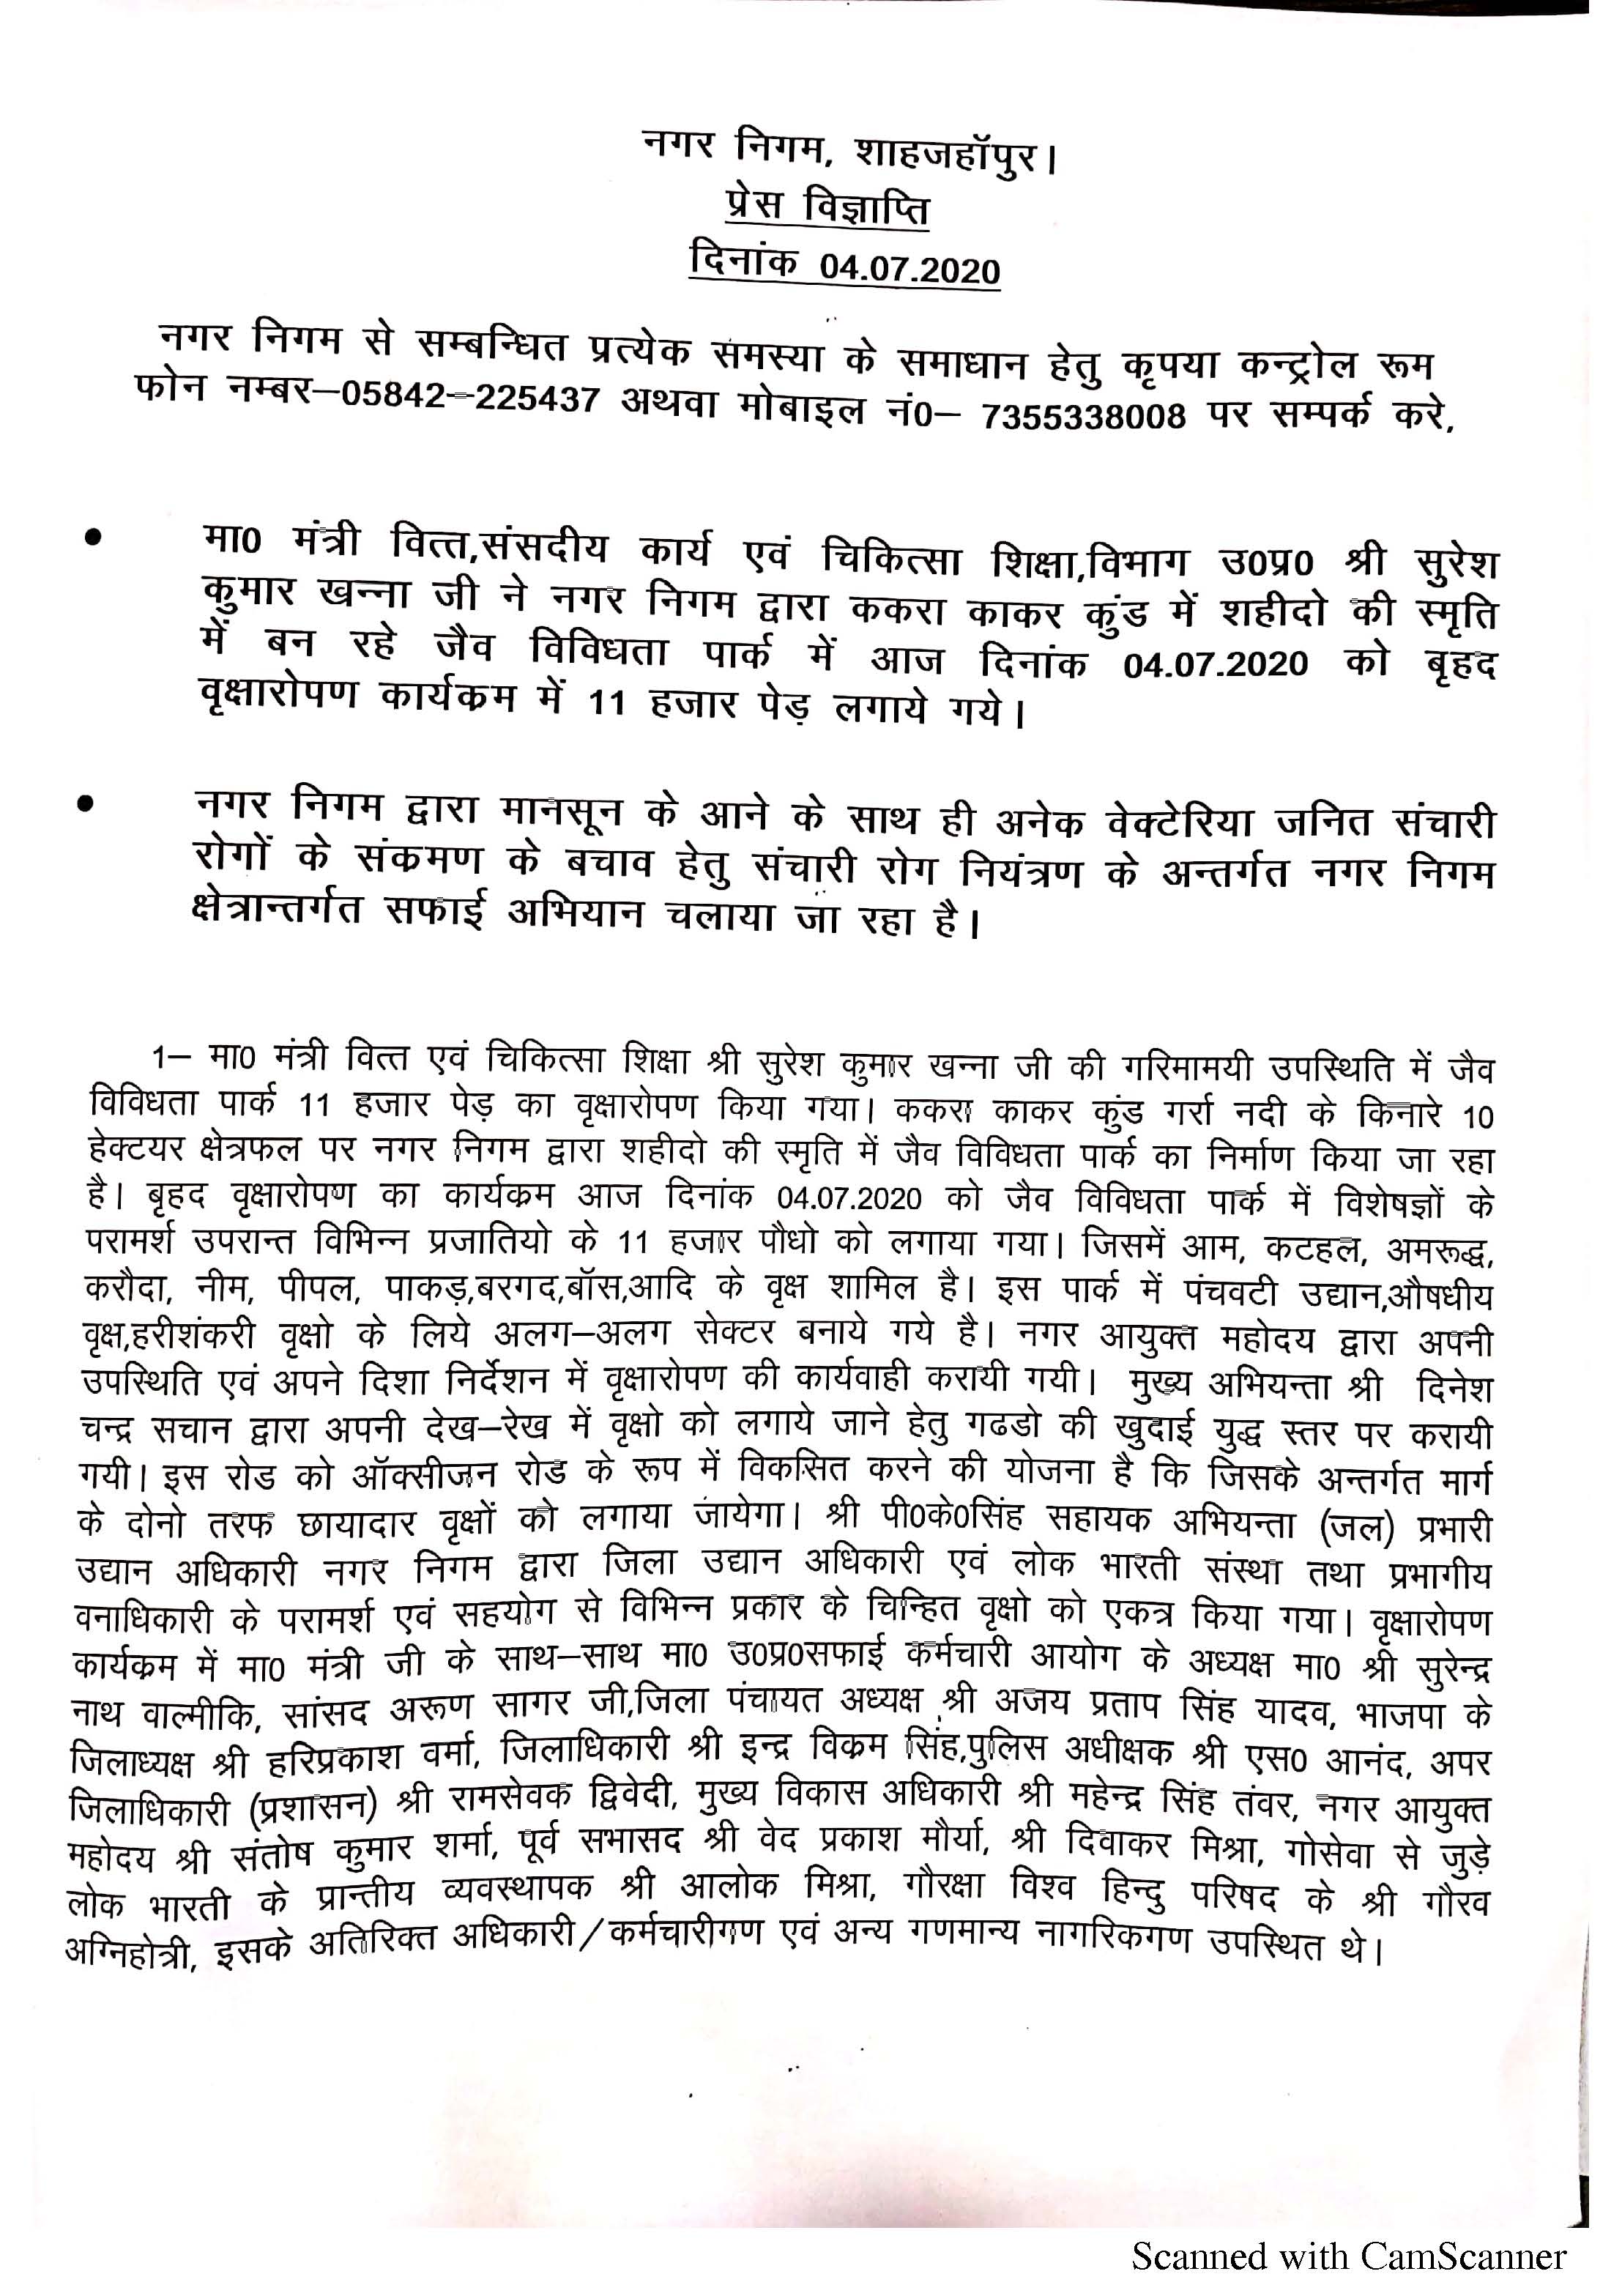 माननीय मंत्री वित्त एवं चिकित्सा शिक्षा श्री सुरेश कुमार खन्ना जी की गरिमामयी उपस्थिति  में दिनांक 4.7.2020 को हुए वृक्षारोपण के विषय में जारी प्रेस विज्ञप्ति के संबंध में